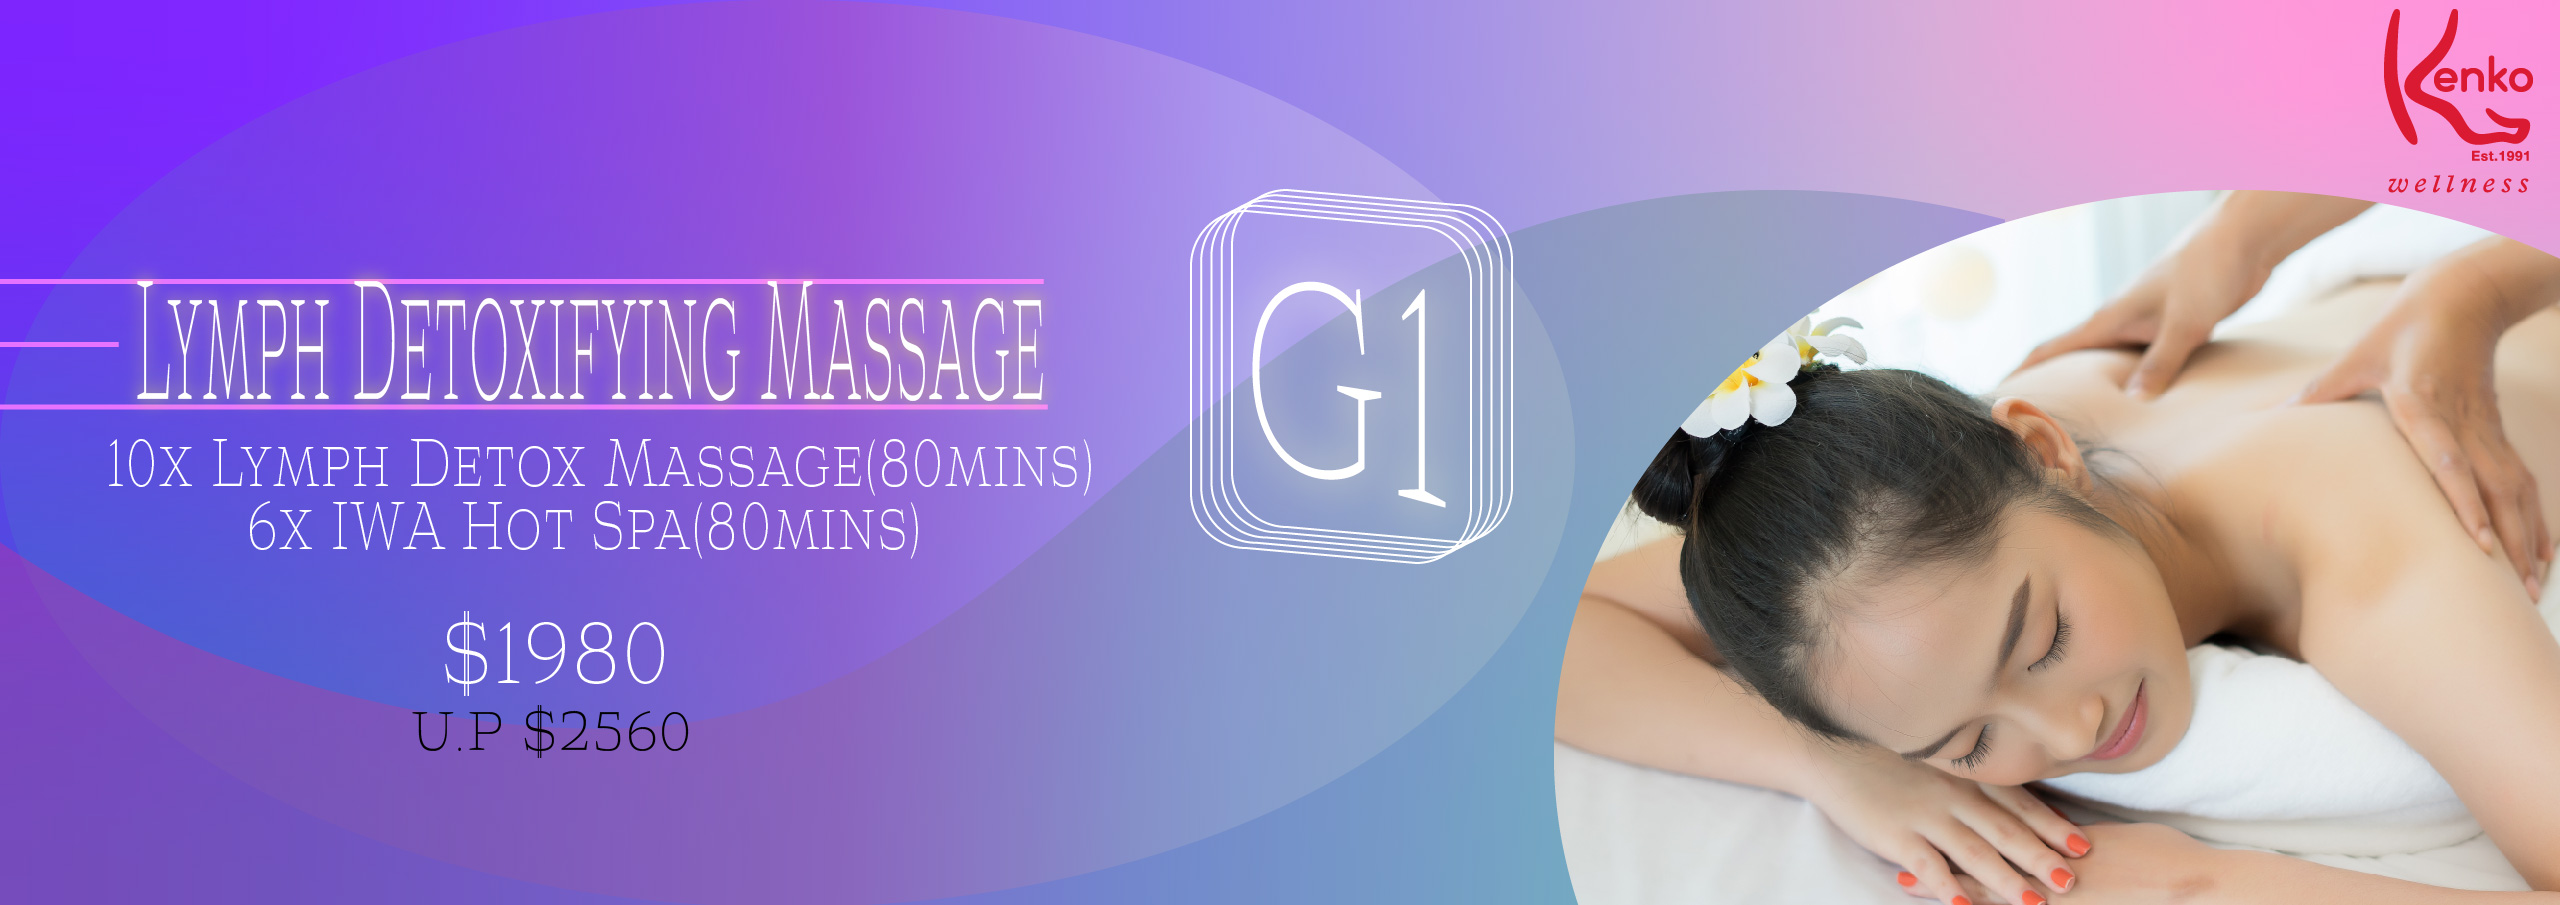 Lymph detoxifying massage package kenko spa